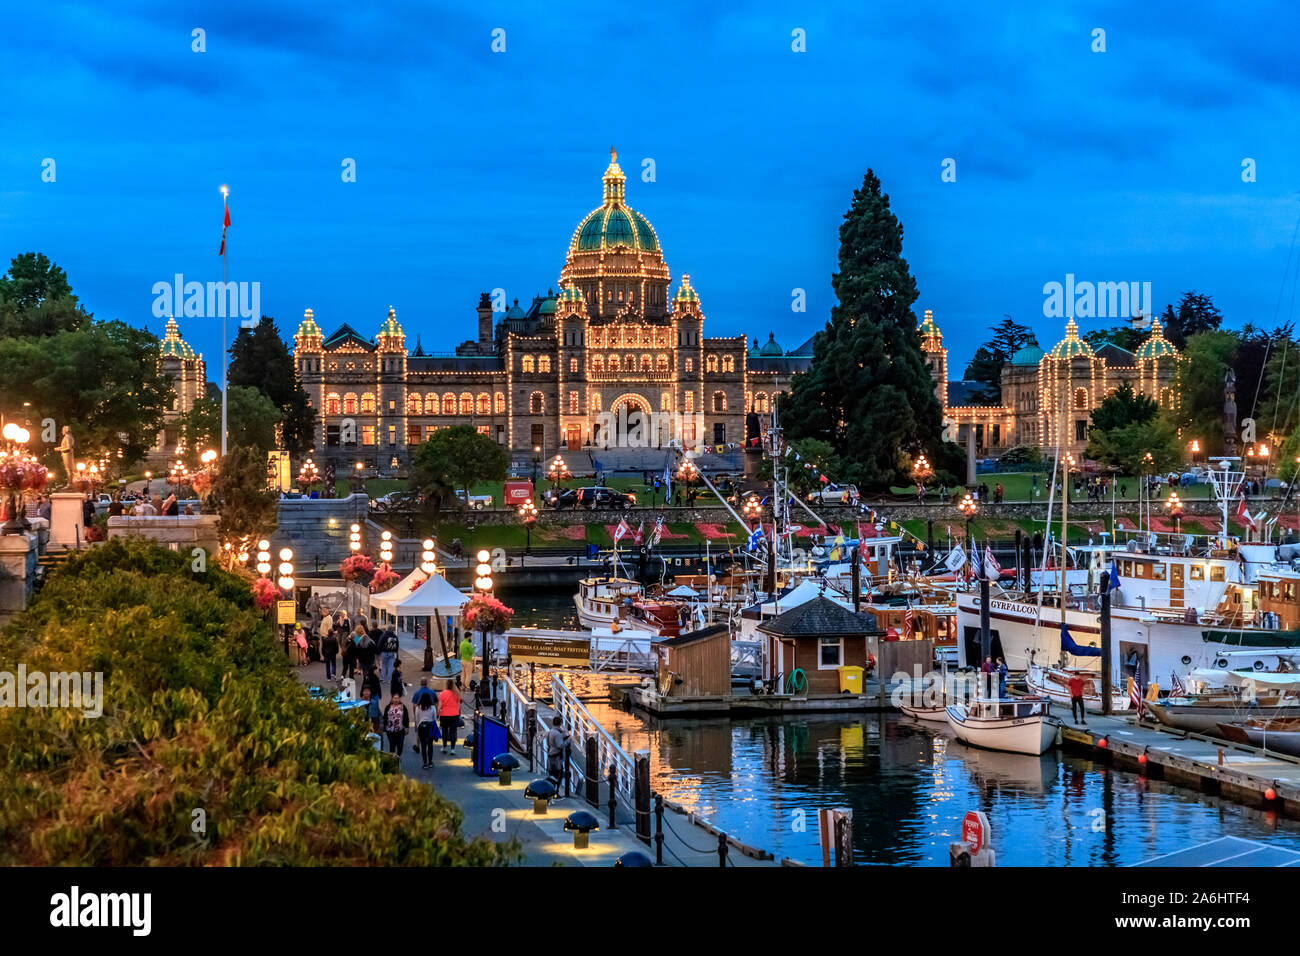 Il palazzo del parlamento in Victoria, British Columbia, Canada, illuminate al tramonto con il porto e le barche in primo piano Foto Stock